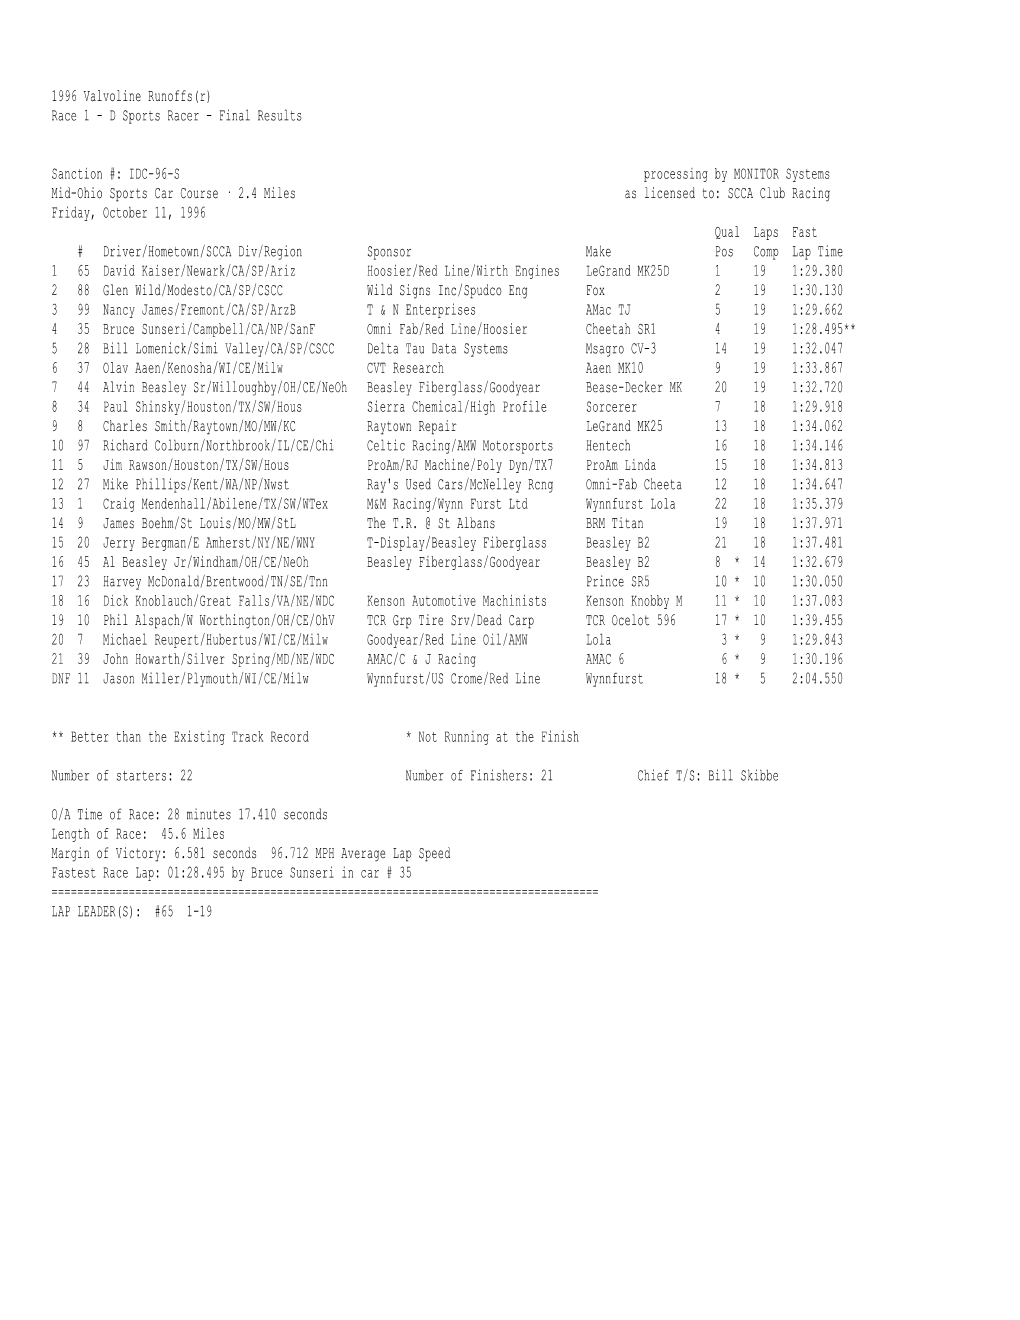 1996 Valvoline Runoffs(R) Race 1 - D Sports Racer - Final Results